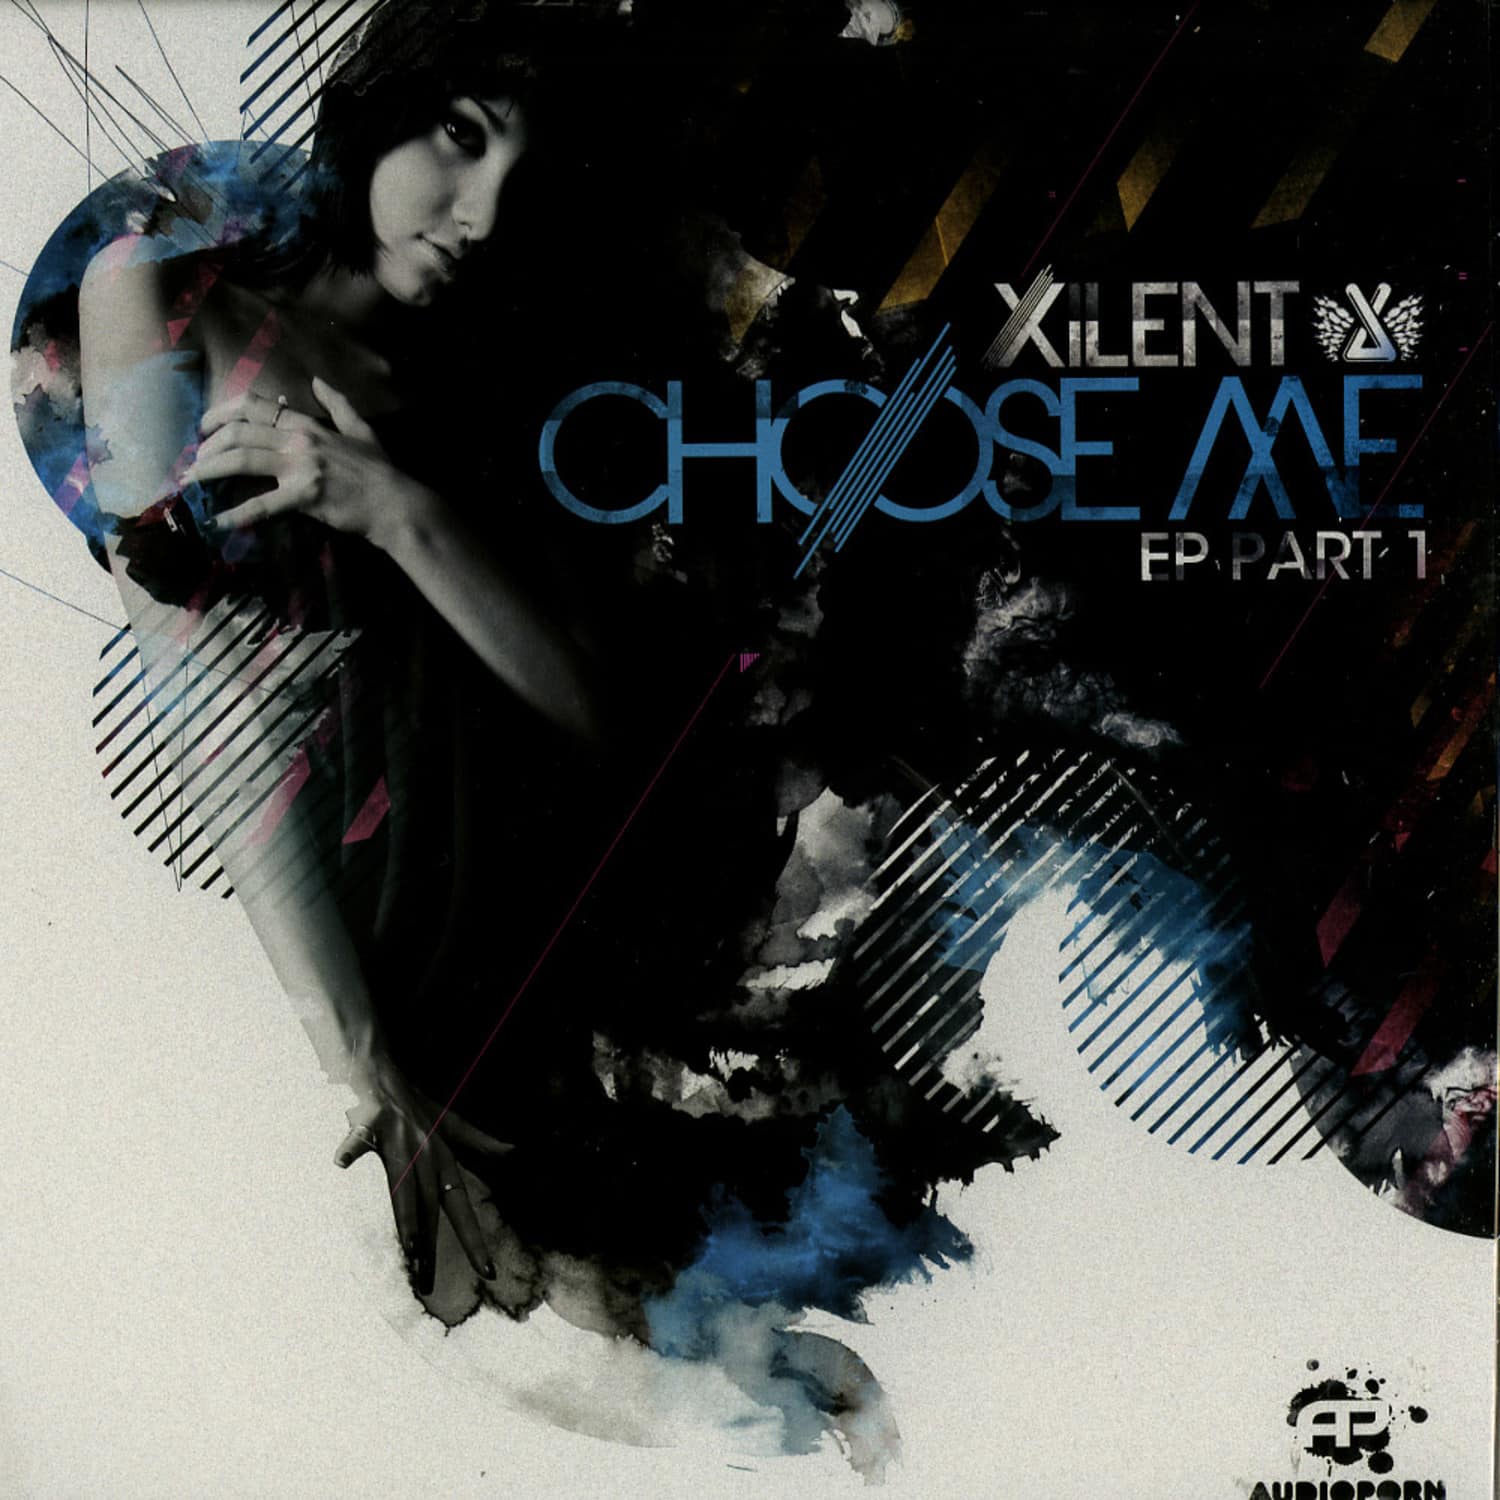 Xilent - CHOOSE ME EP PART 1